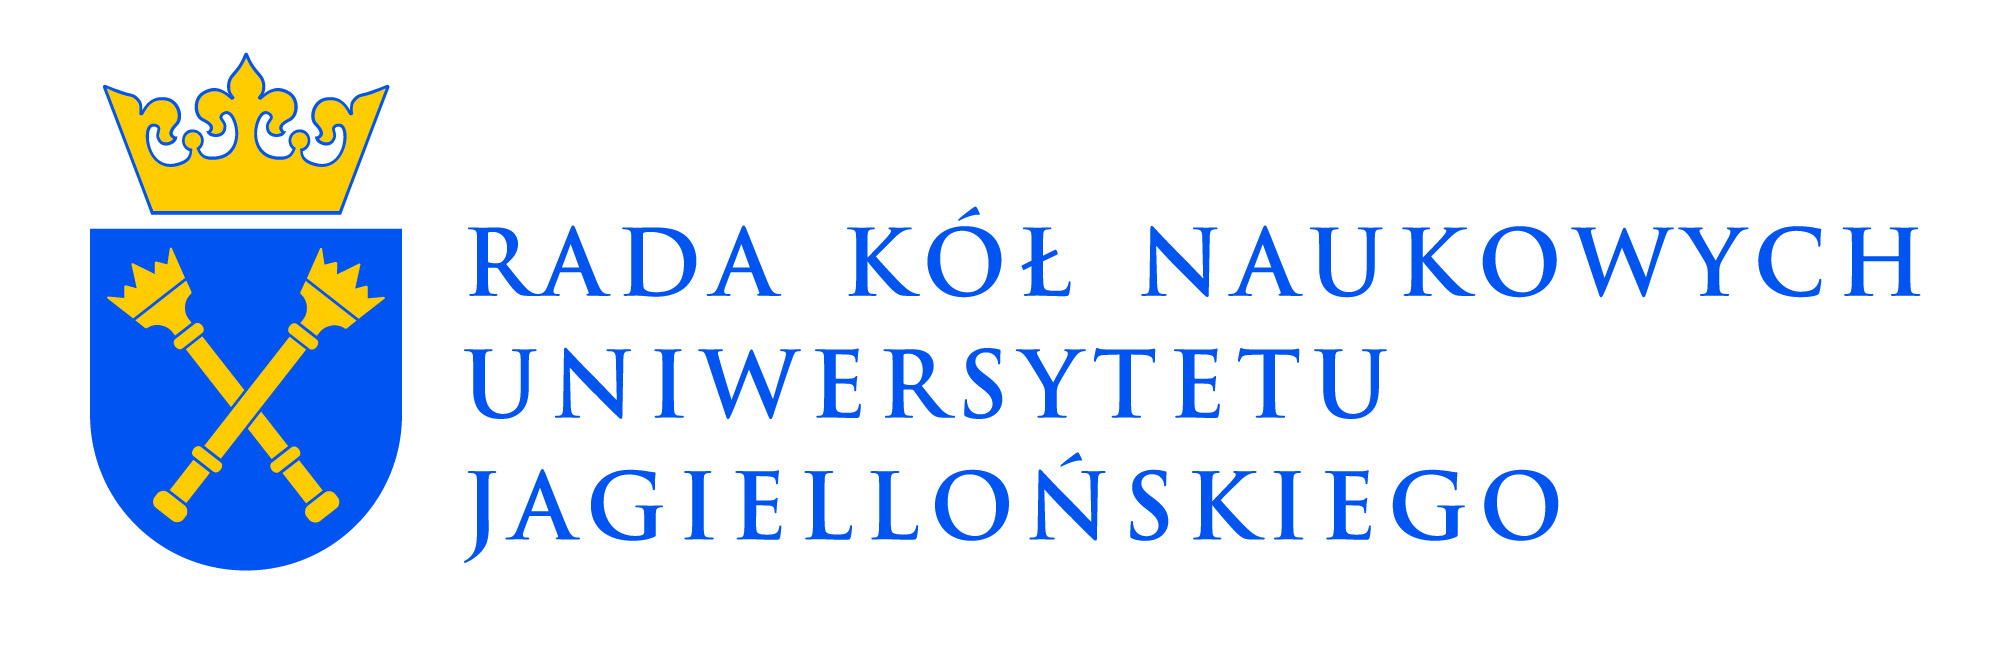 Rada Kół Naukowych Uniwersytetu Jagiellońskiego